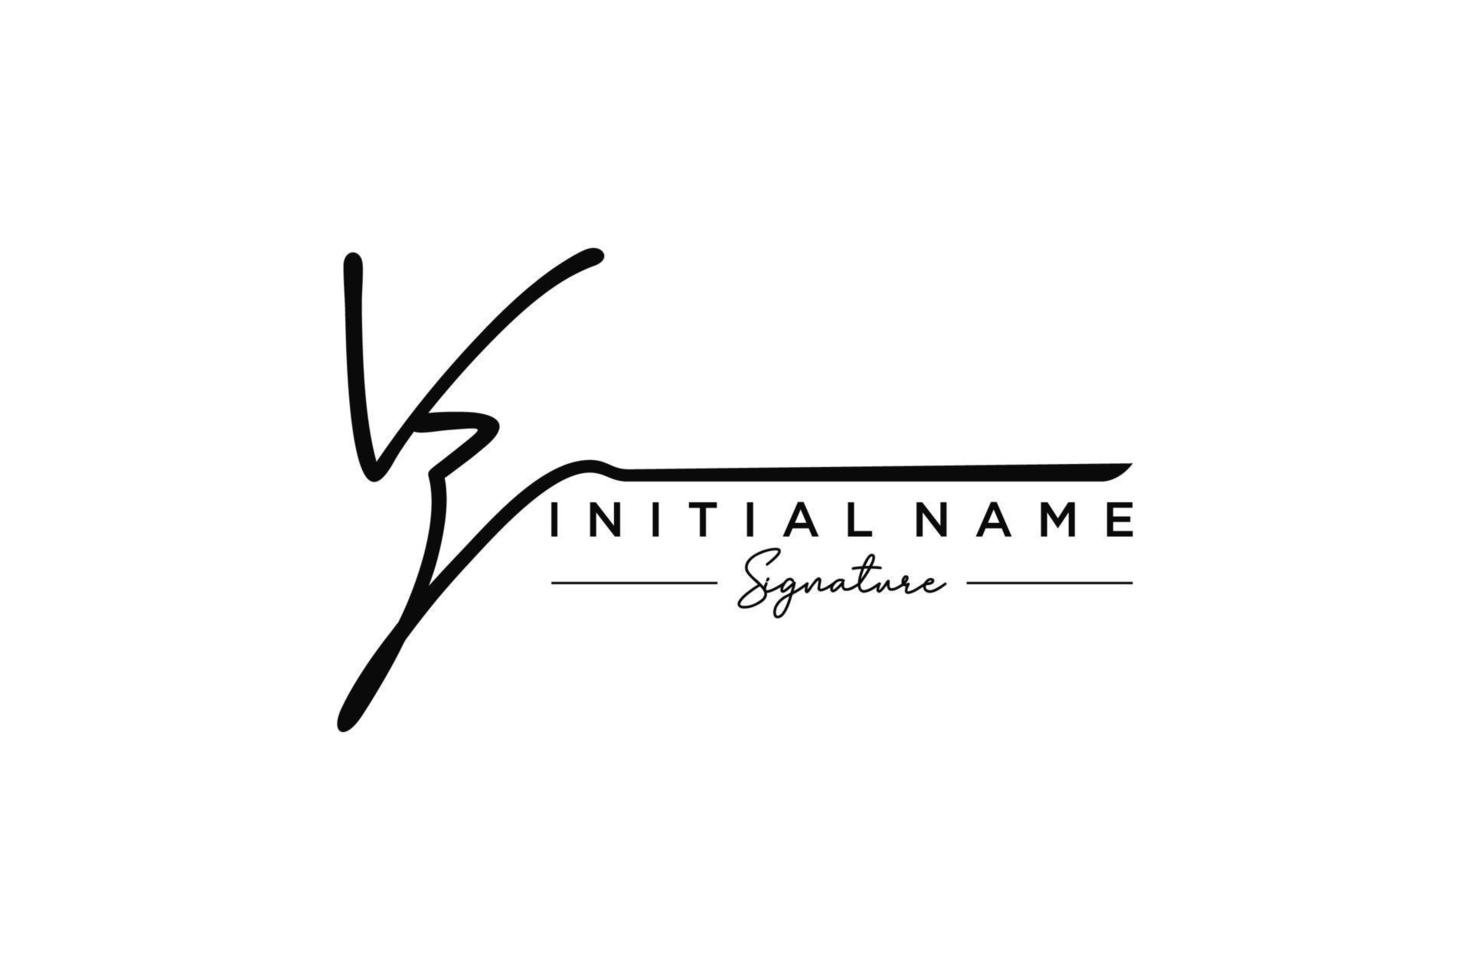 vetor inicial de modelo de logotipo de assinatura vz. ilustração vetorial de letras de caligrafia desenhada à mão.